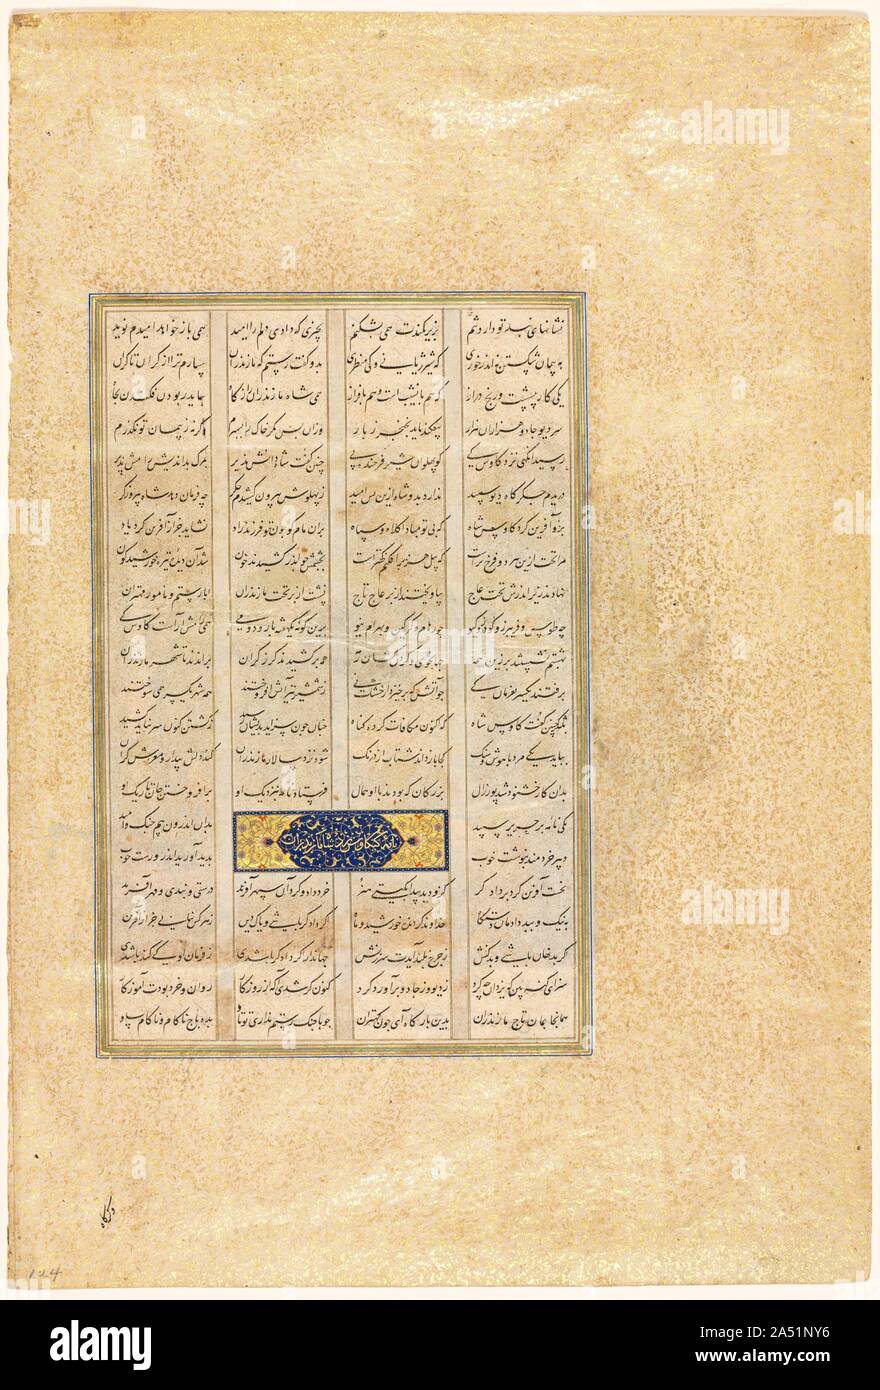 Seite von einem Schah-nama (Buch der Könige) von Firdausi (Persisch, ca. 934-1020), 1520-40. Begonnen am Ende der Herrschaft des Schah Ismail (regierte 1501-24), erster König der Safavid Dynastie von Iran, diese Kopie des Shah-nama (Buch der Könige) war während der Herrschaft seines Sohnes Shah Tahmasp abgeschlossen. Einmalig in Umfang und Feinheit, dem Buch enthalten 259 Gemälde von Meister Künstler in der königlichen Werkstatt. Zwei Kalligraphen kopiert den Text in einem eleganten, fließenden Nasta &#x2018;liq Script. Im Jahre 1568, Shah Tahmasp gab dieses Buch als Geschenk in den Osmanischen Sultan Selim II. von der Türkei. Stockfoto